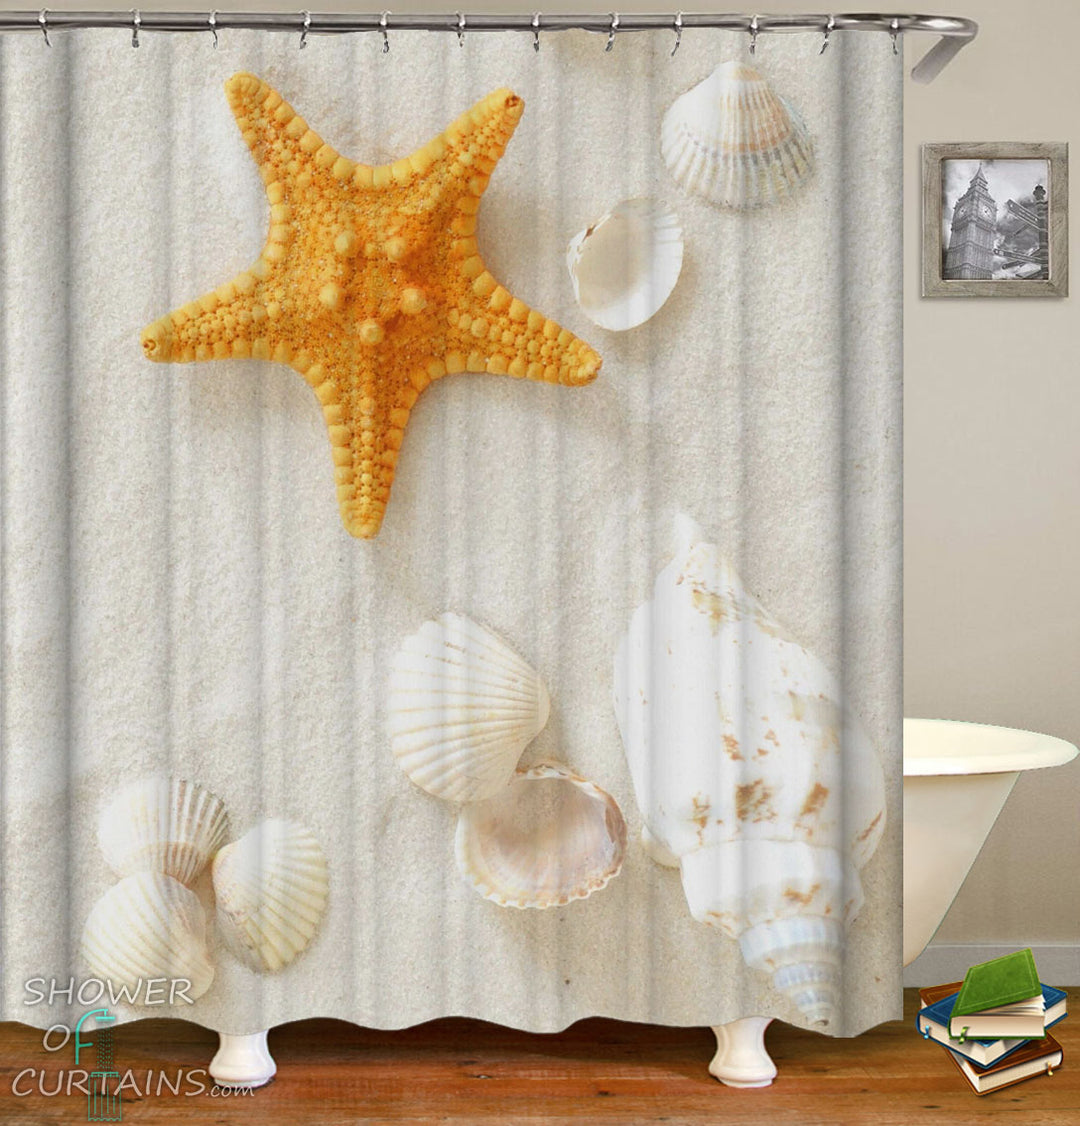 Beach Shower Curtain of Yellow Starfish And Seashells Shower Curtains Design